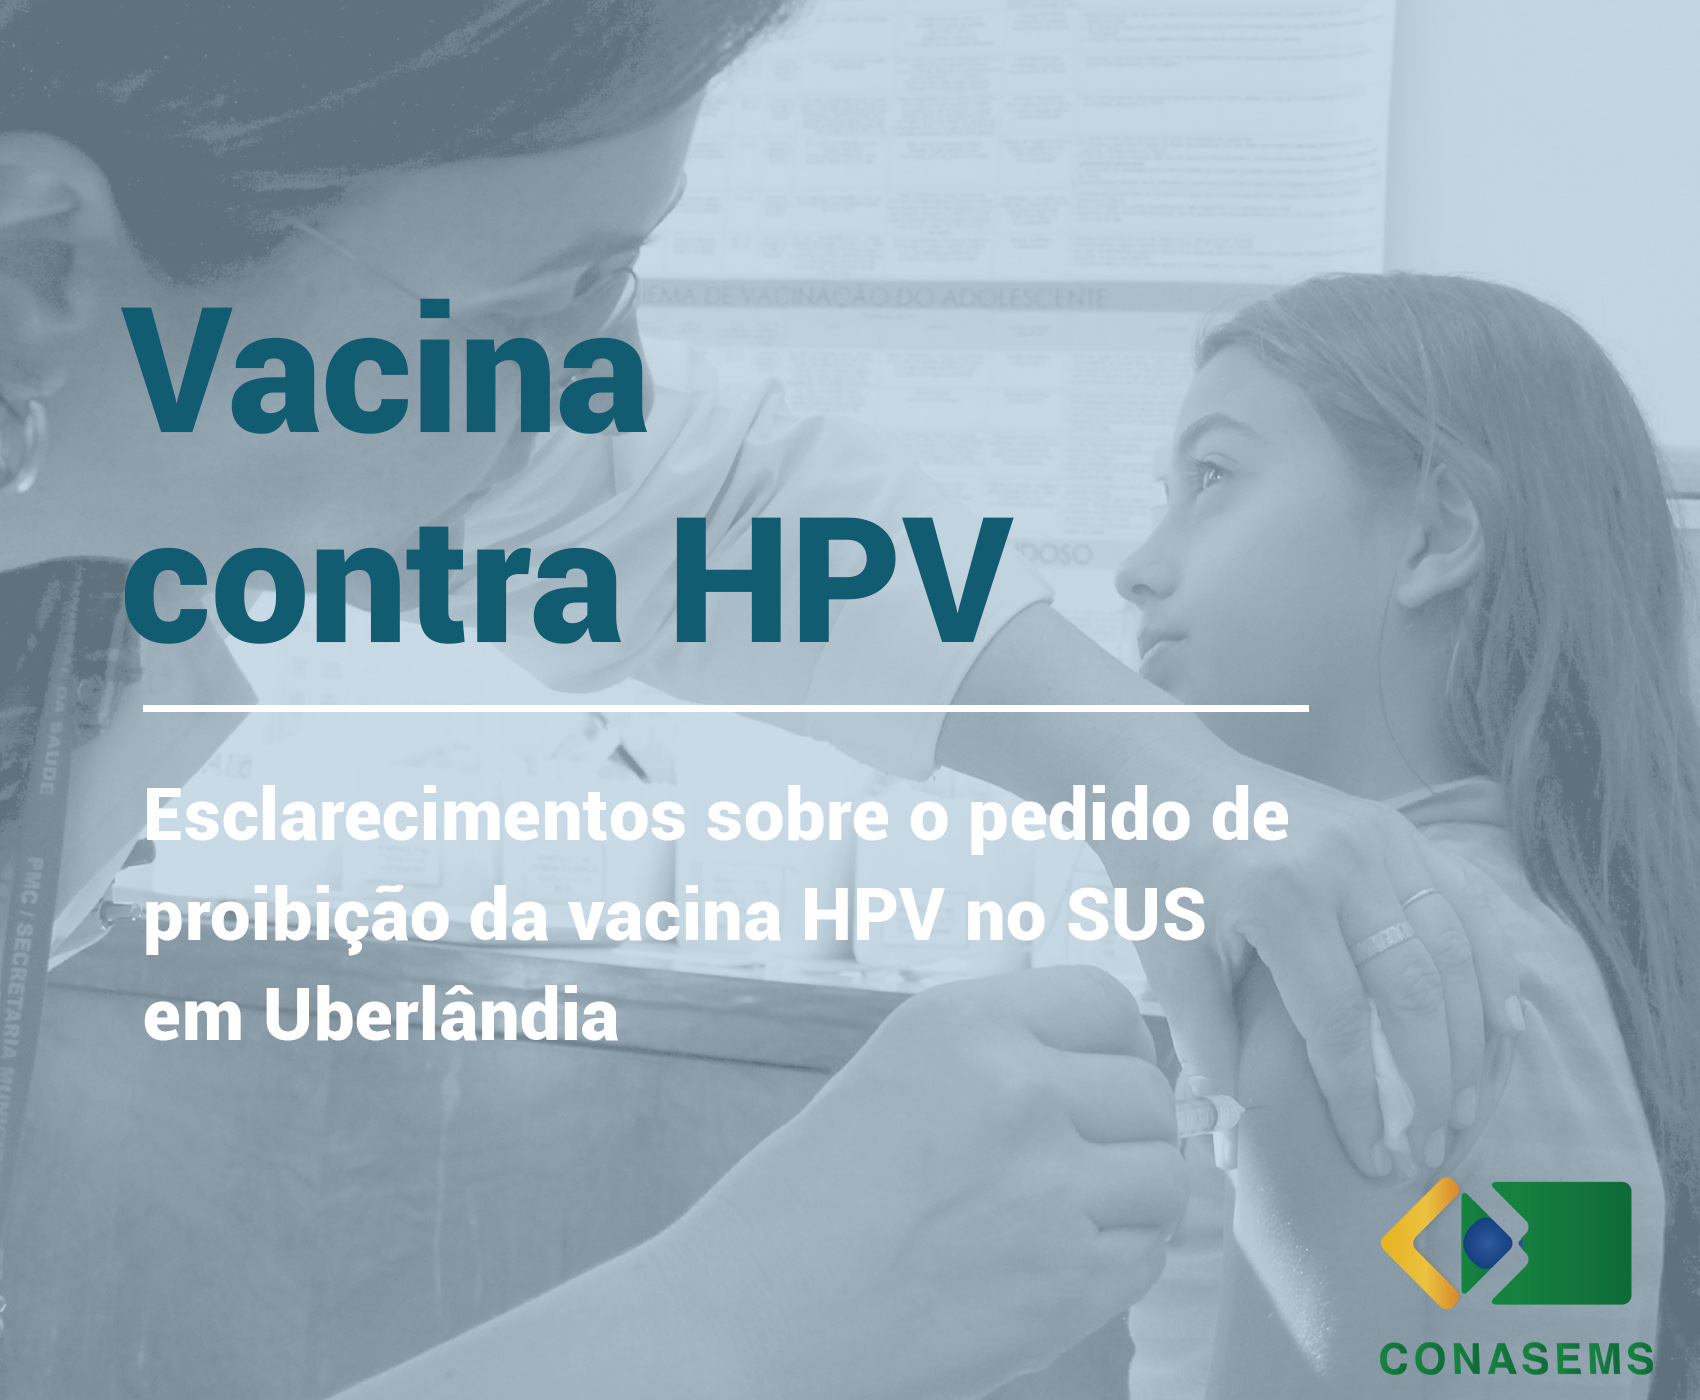 Nota Informativa n° 01/2016/CGPNI/DEVIT/SVS/MS: esclarecimentos sobre a proibição da vacina contra HPV